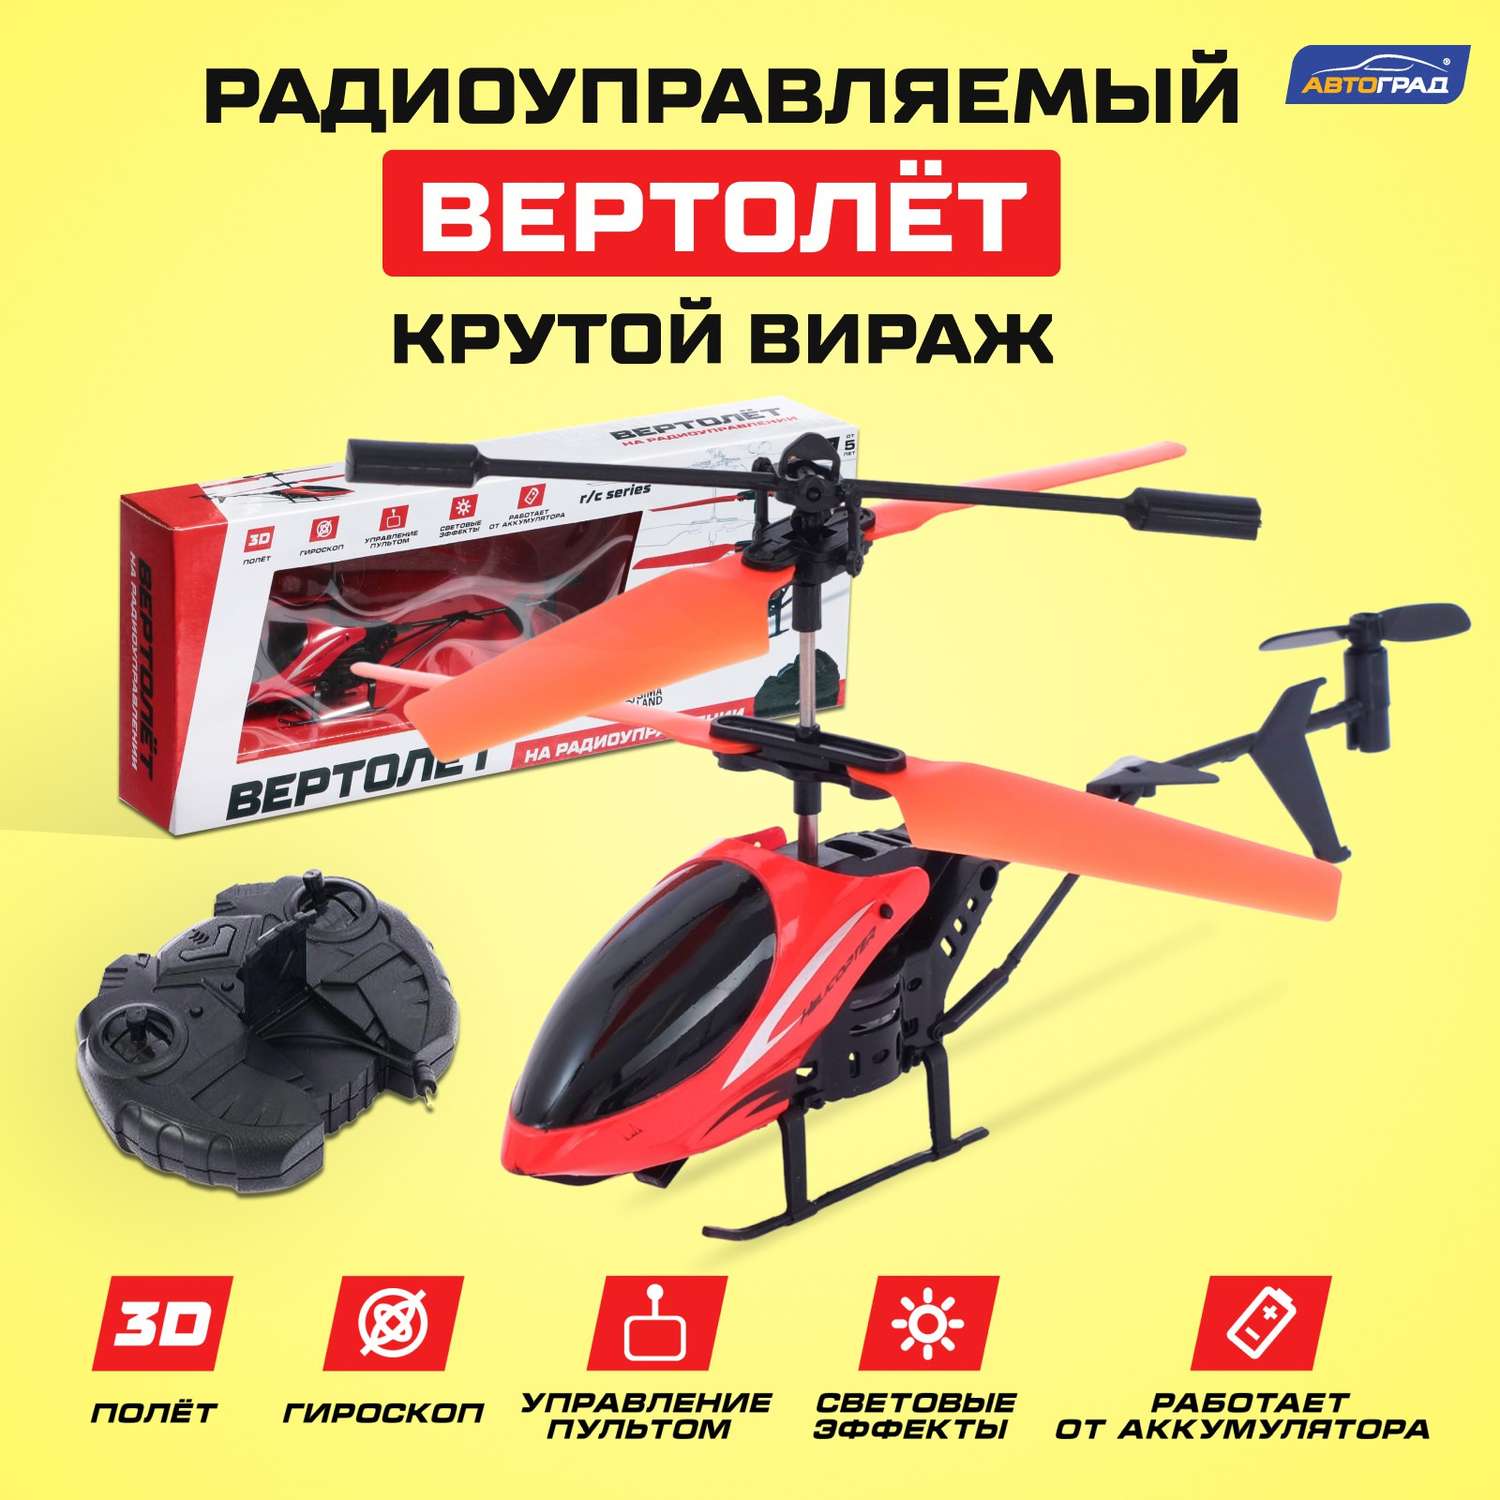 Вертолёт Автоград радиоуправляемый «Крутой вираж» 27 mHz цвет красный - фото 1